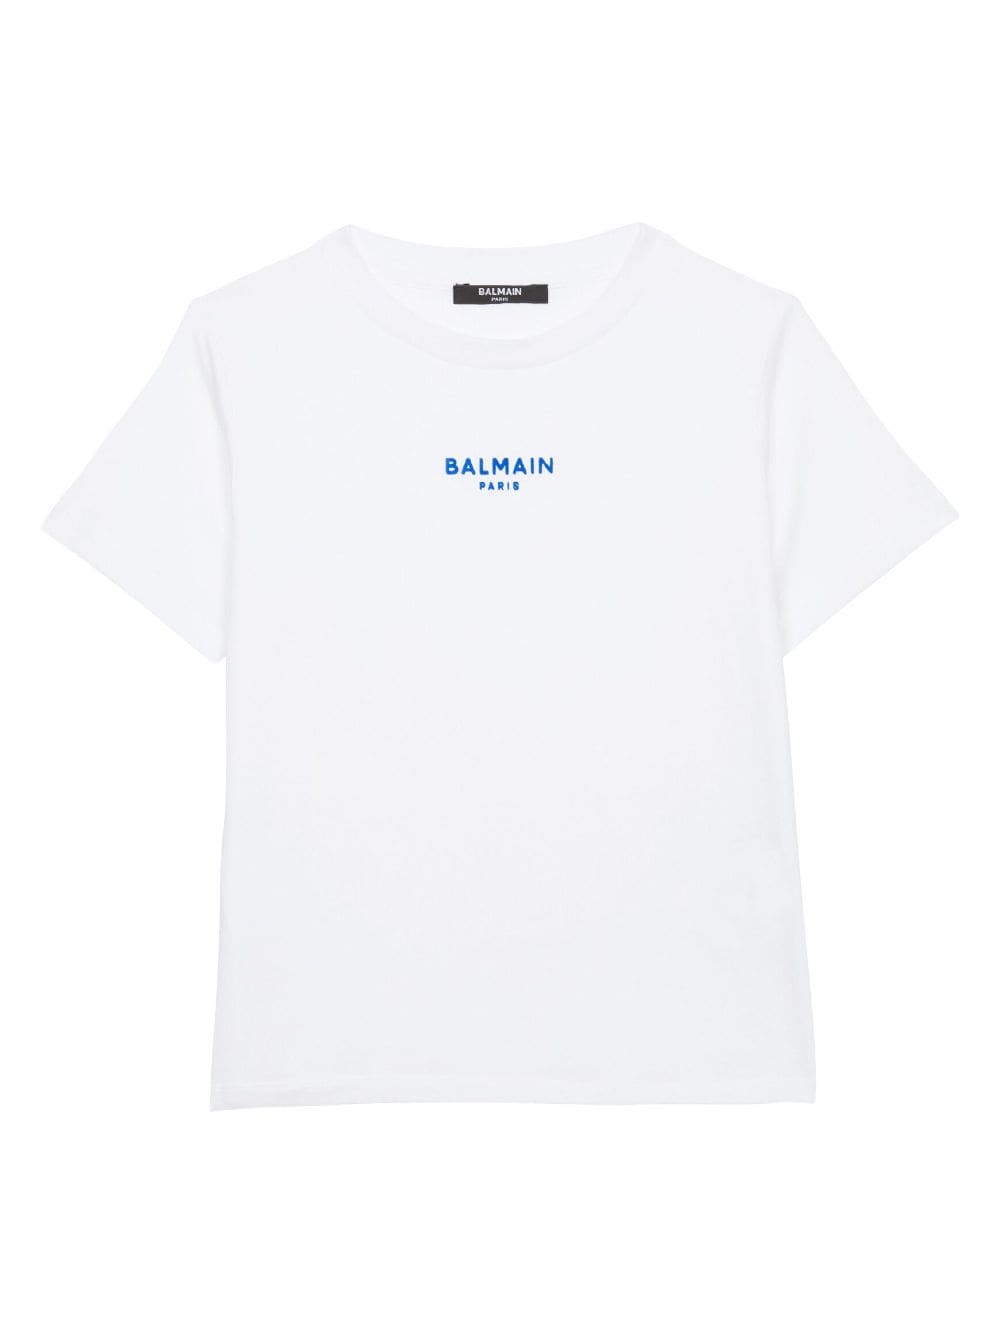 T-shirt bianca per bambino con logo blu